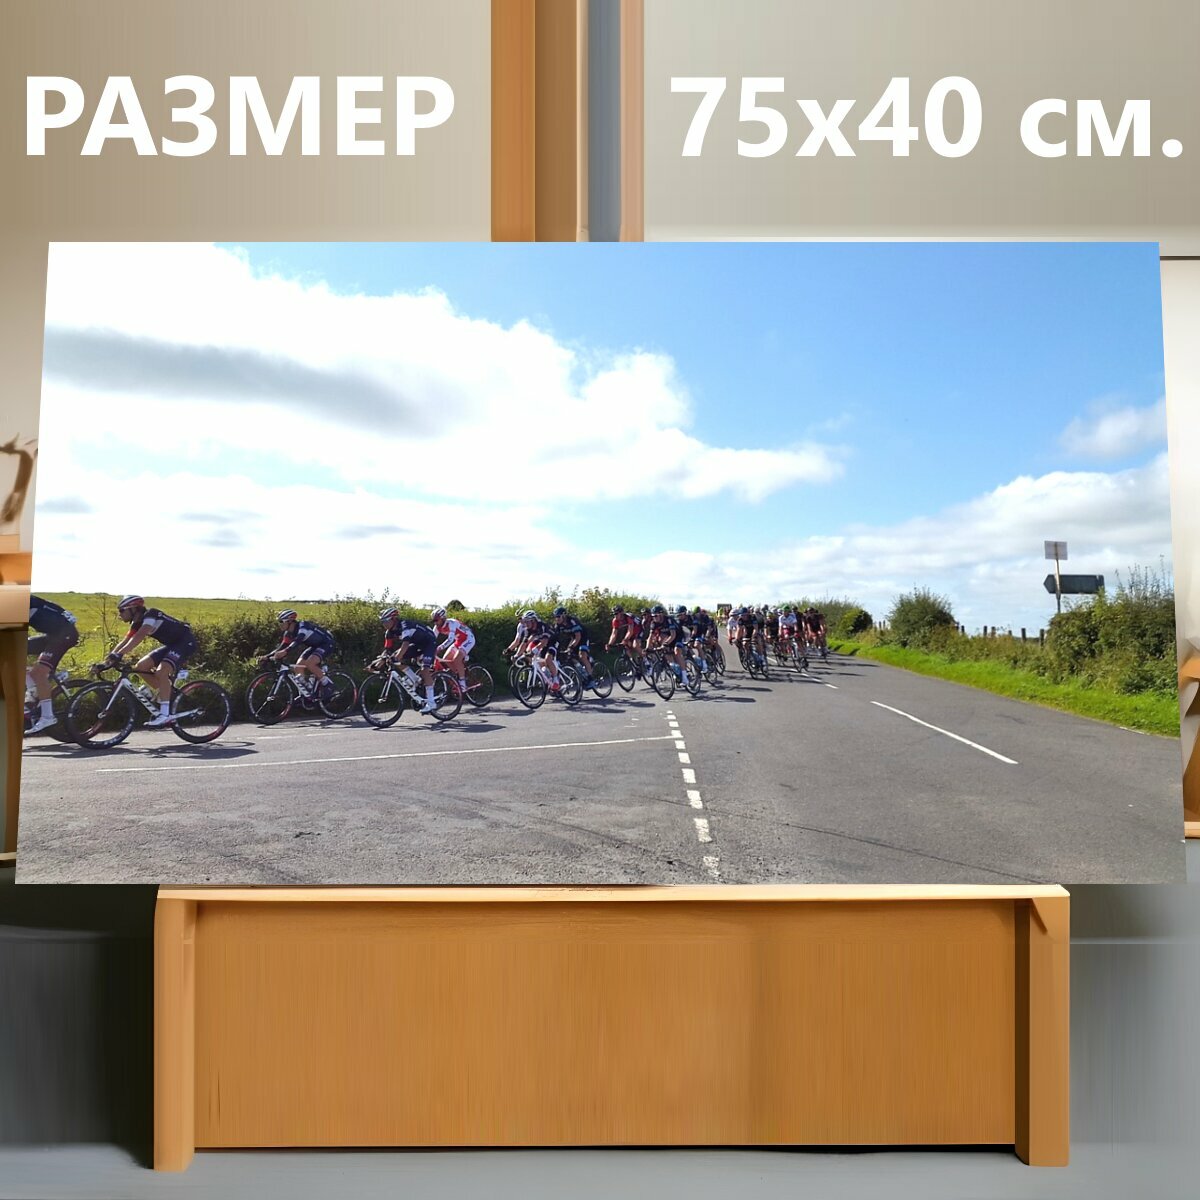 Картина на холсте "Кататься на велосипеде, шоссейный велосипед, езда на велосипеде" на подрамнике 75х40 см. для интерьера